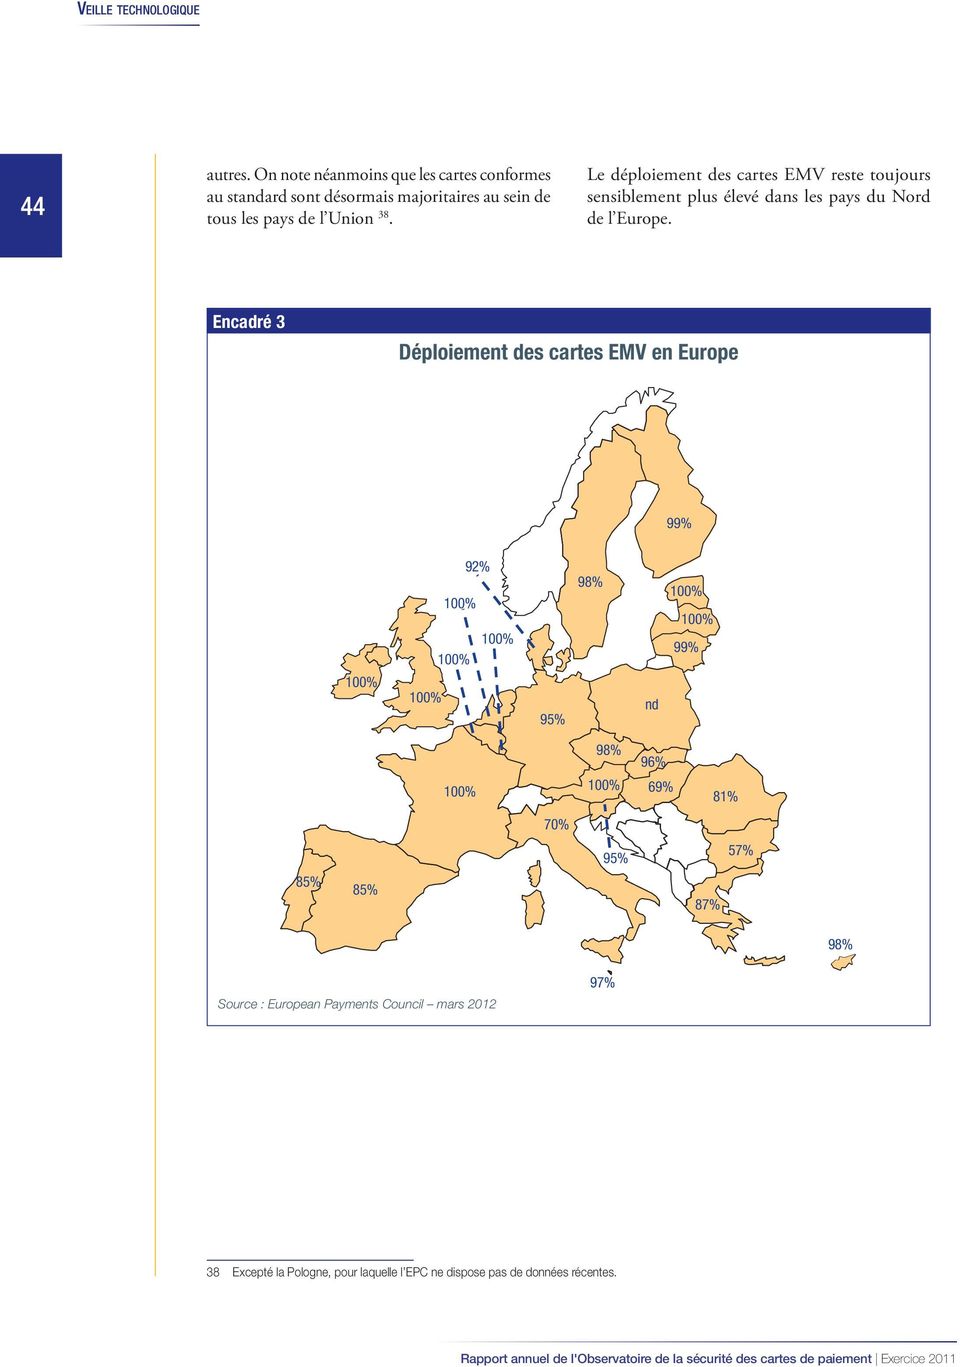 38. Le déploiement des cartes EMV reste toujours sensiblement plus élevé dans les pays du Nord de l Europe.